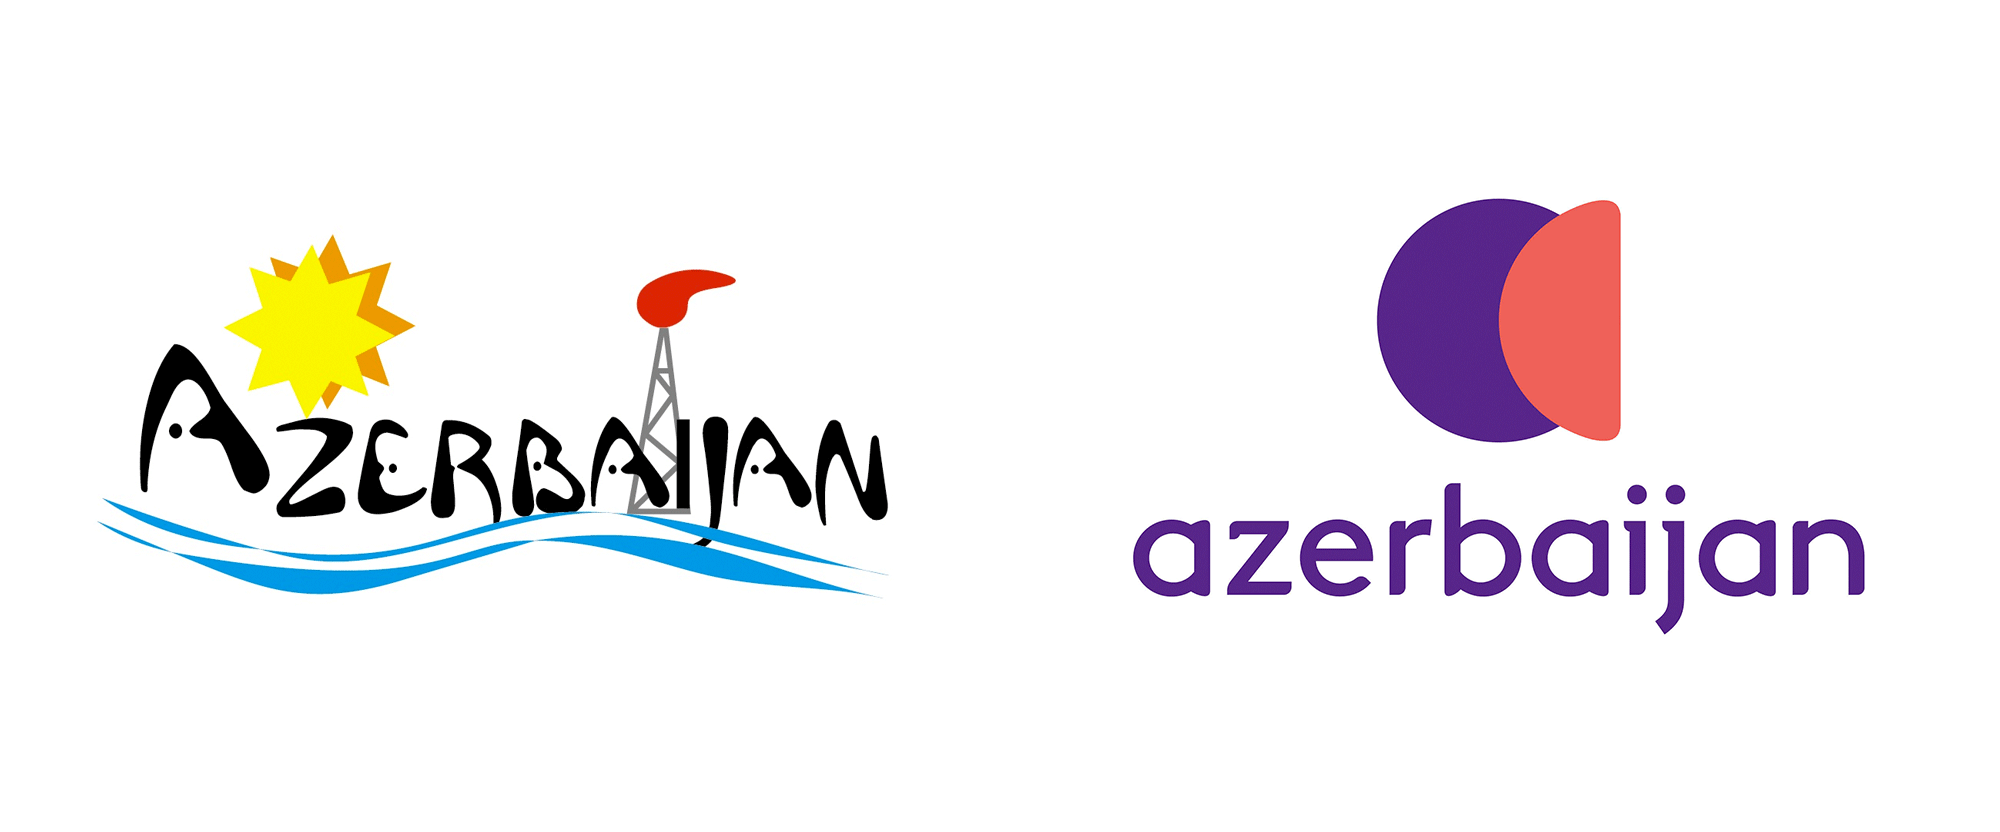 Tourism Logo - Brand New: New Logo for Azerbaijan (Tourism)